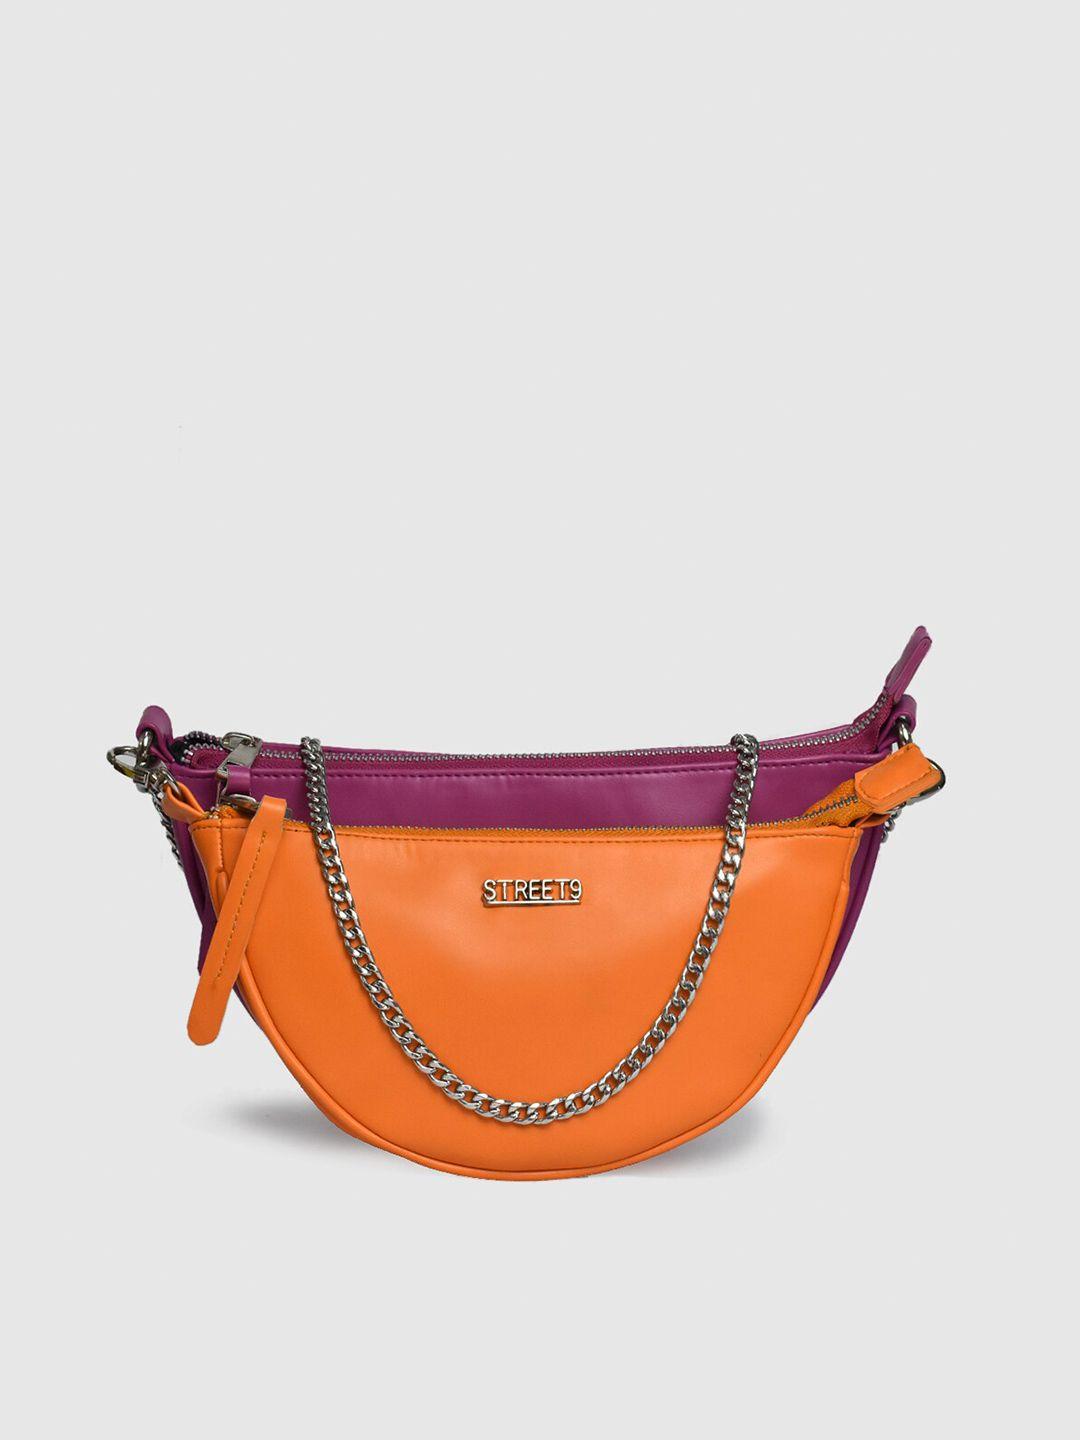 street 9 orange & purple colourblocked purse clutch